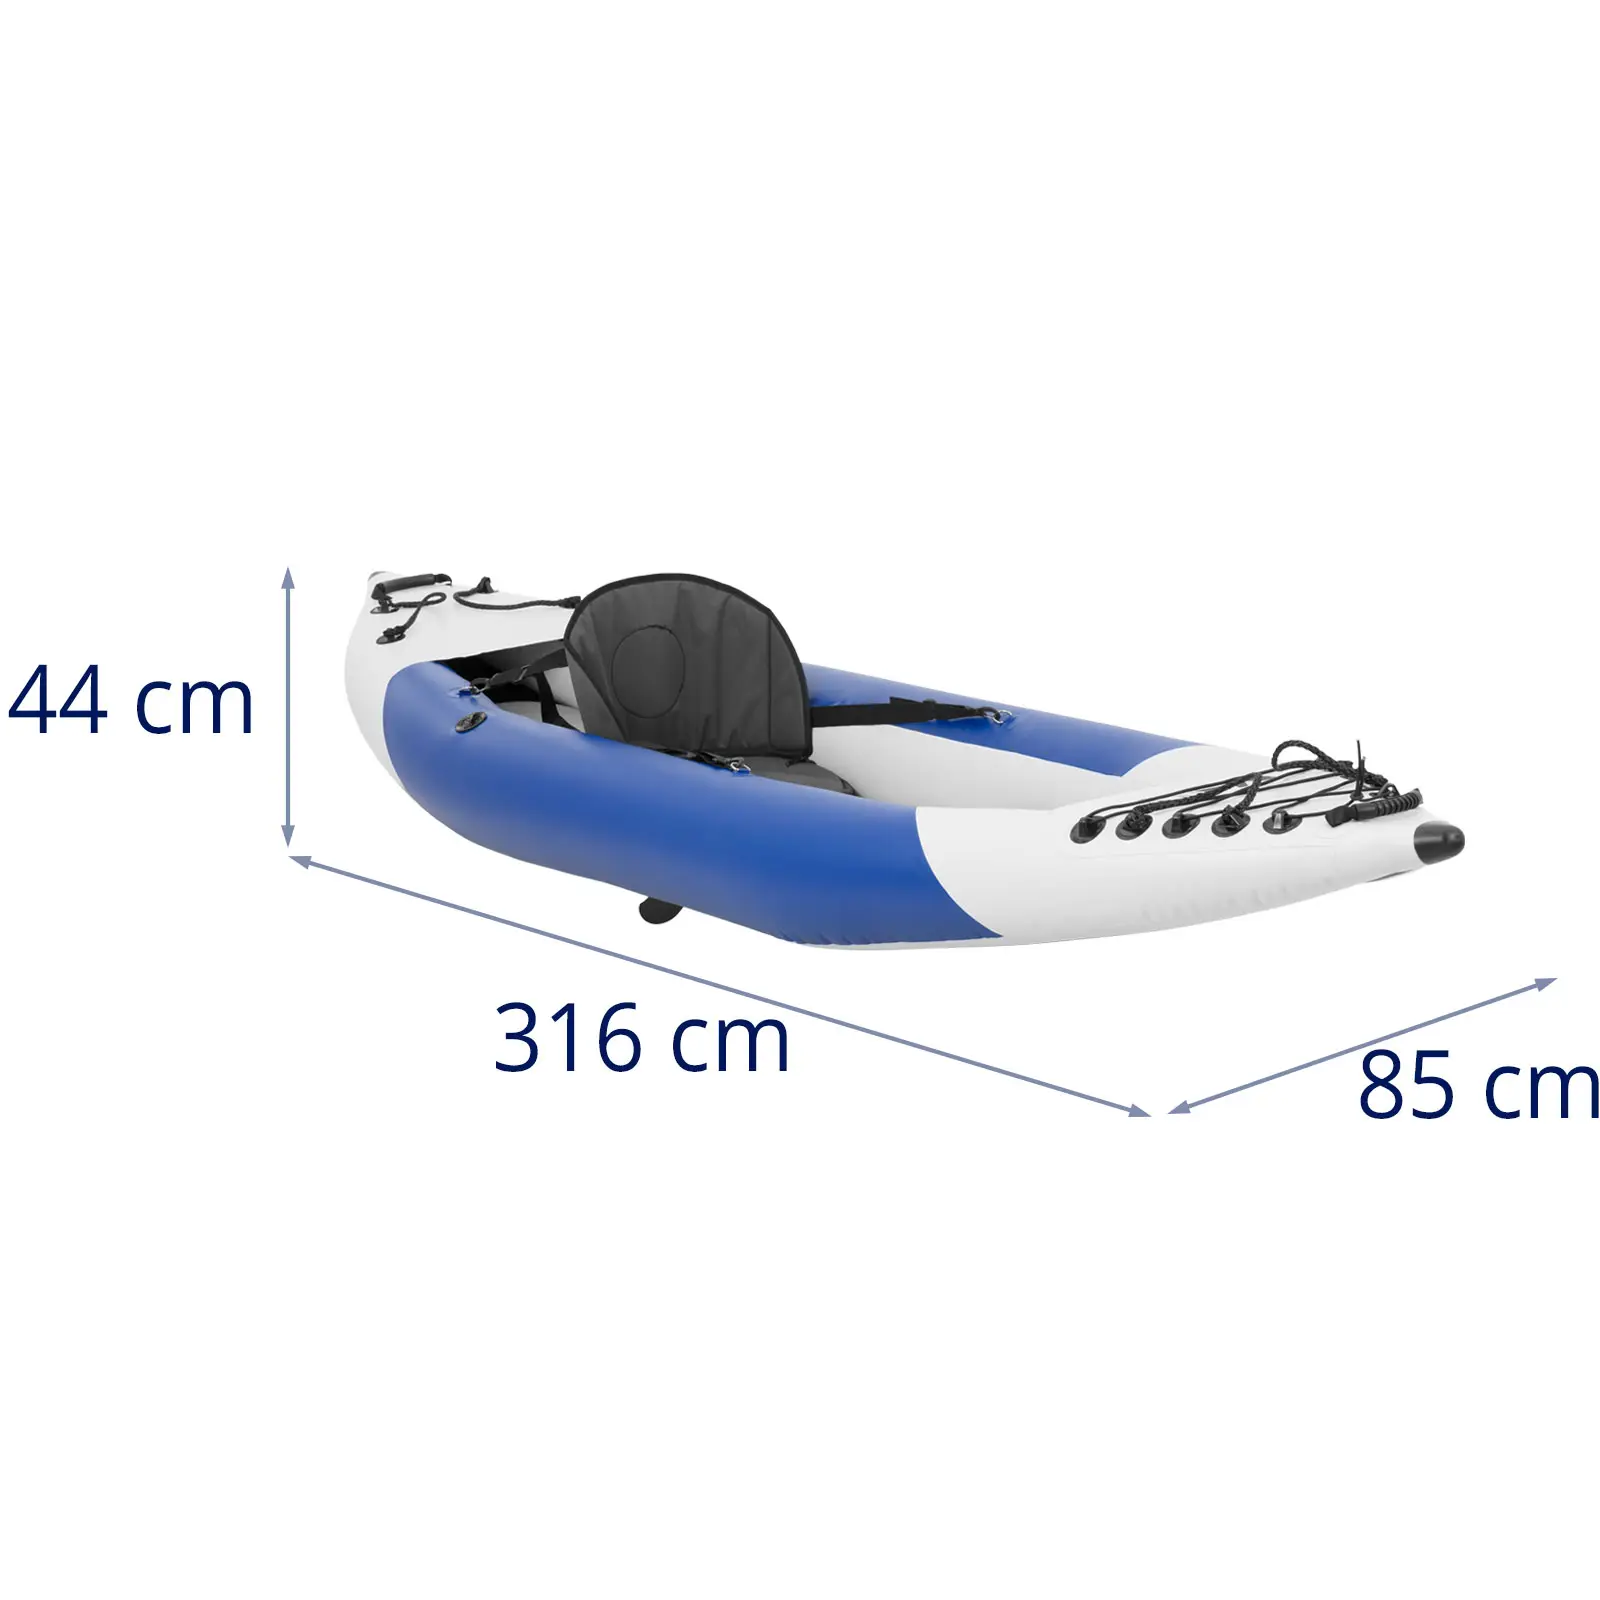 Kayak gonfiabile - Monoposto - Set completo con pagaia, sedile e accessori